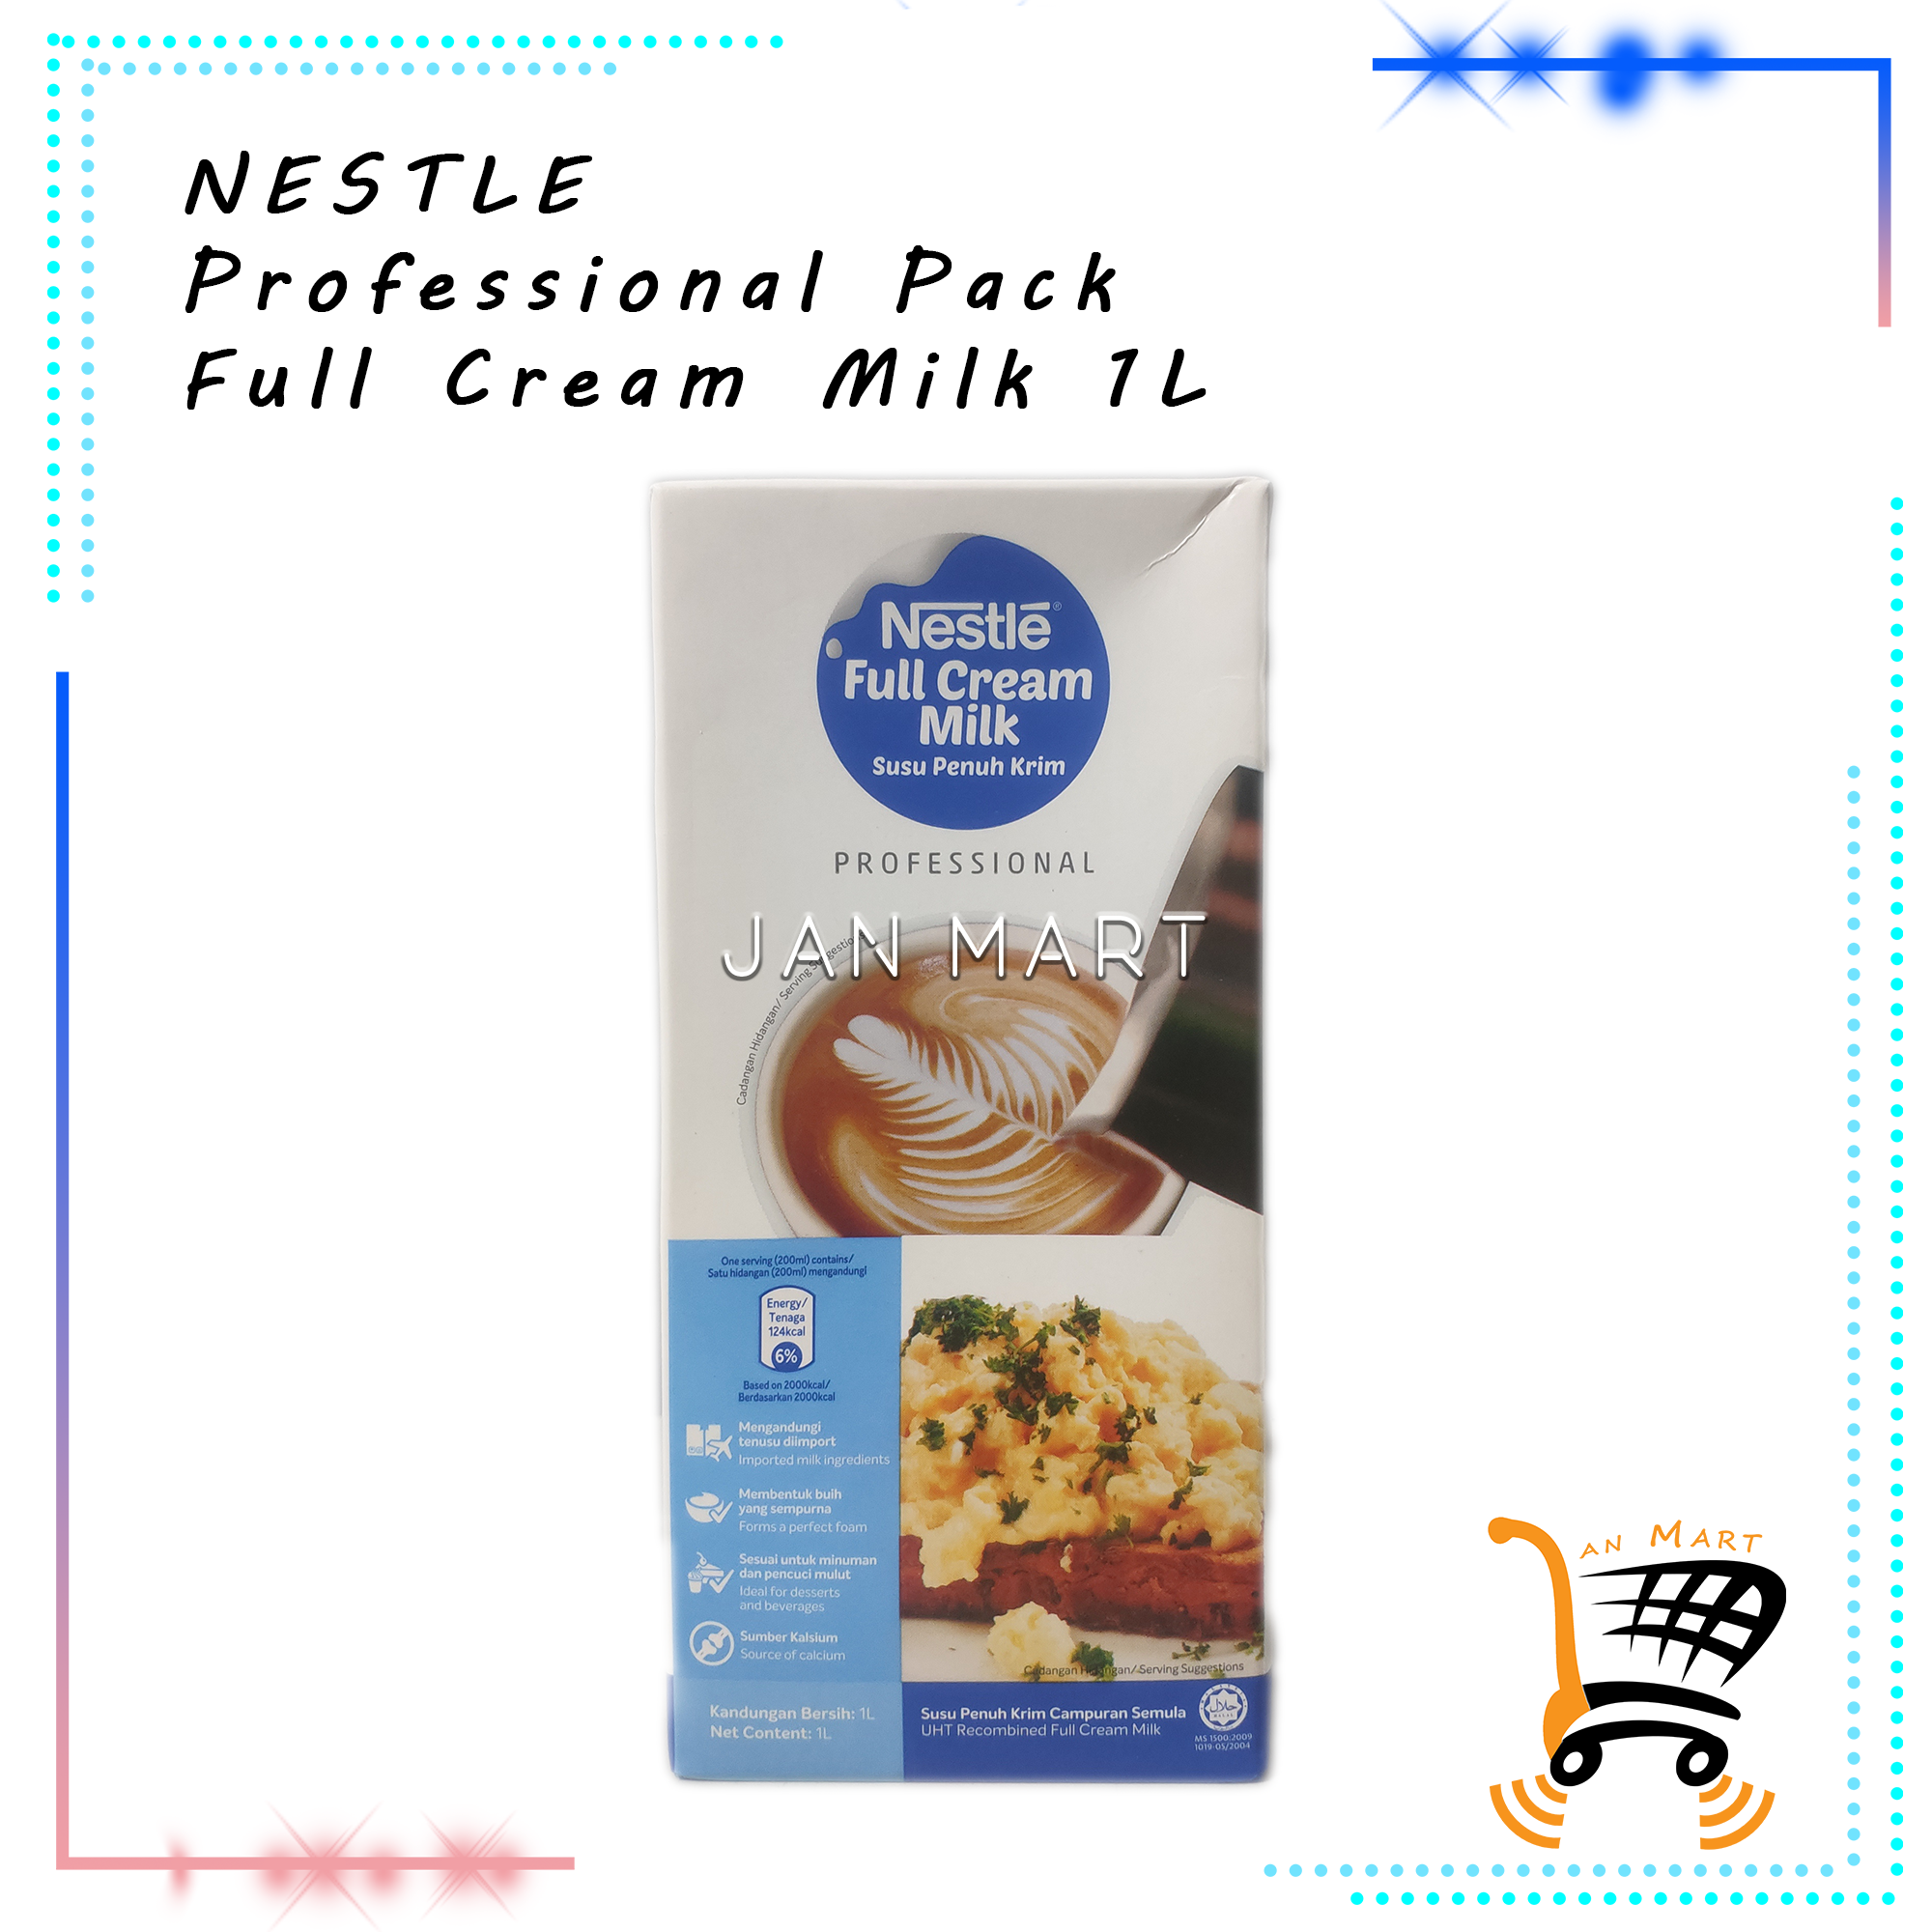 NESTLE Just Milk Professional Pack Full Cream Milk 1L